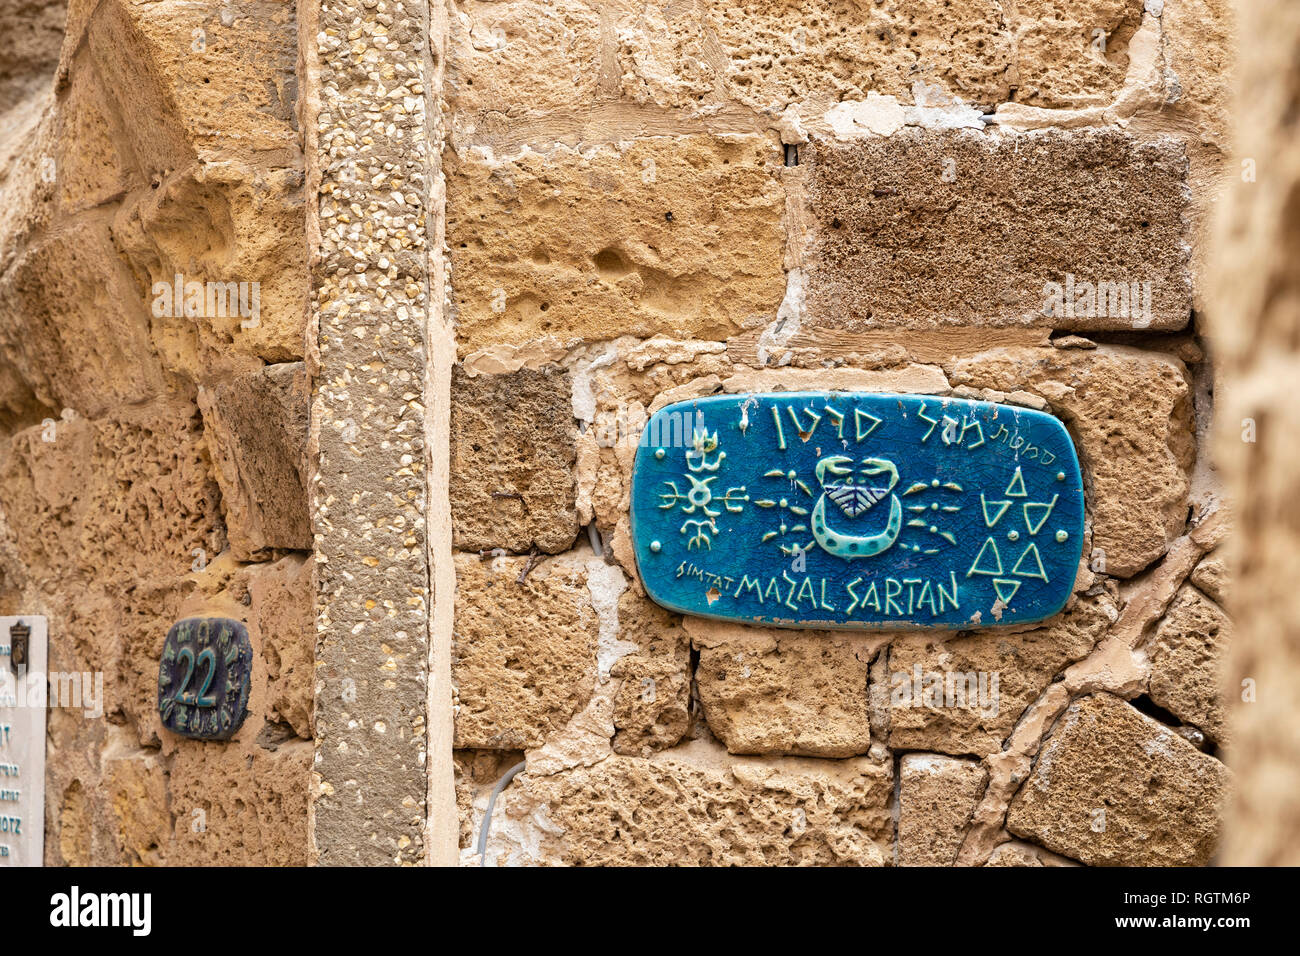 La Vieja Jaffa, Tel Aviv, Israel - 23 de diciembre de 2018: el nombre de la calle placa bellamente decorado en la pared de la vieja Jaffa en Tel Aviv, Israel Foto de stock